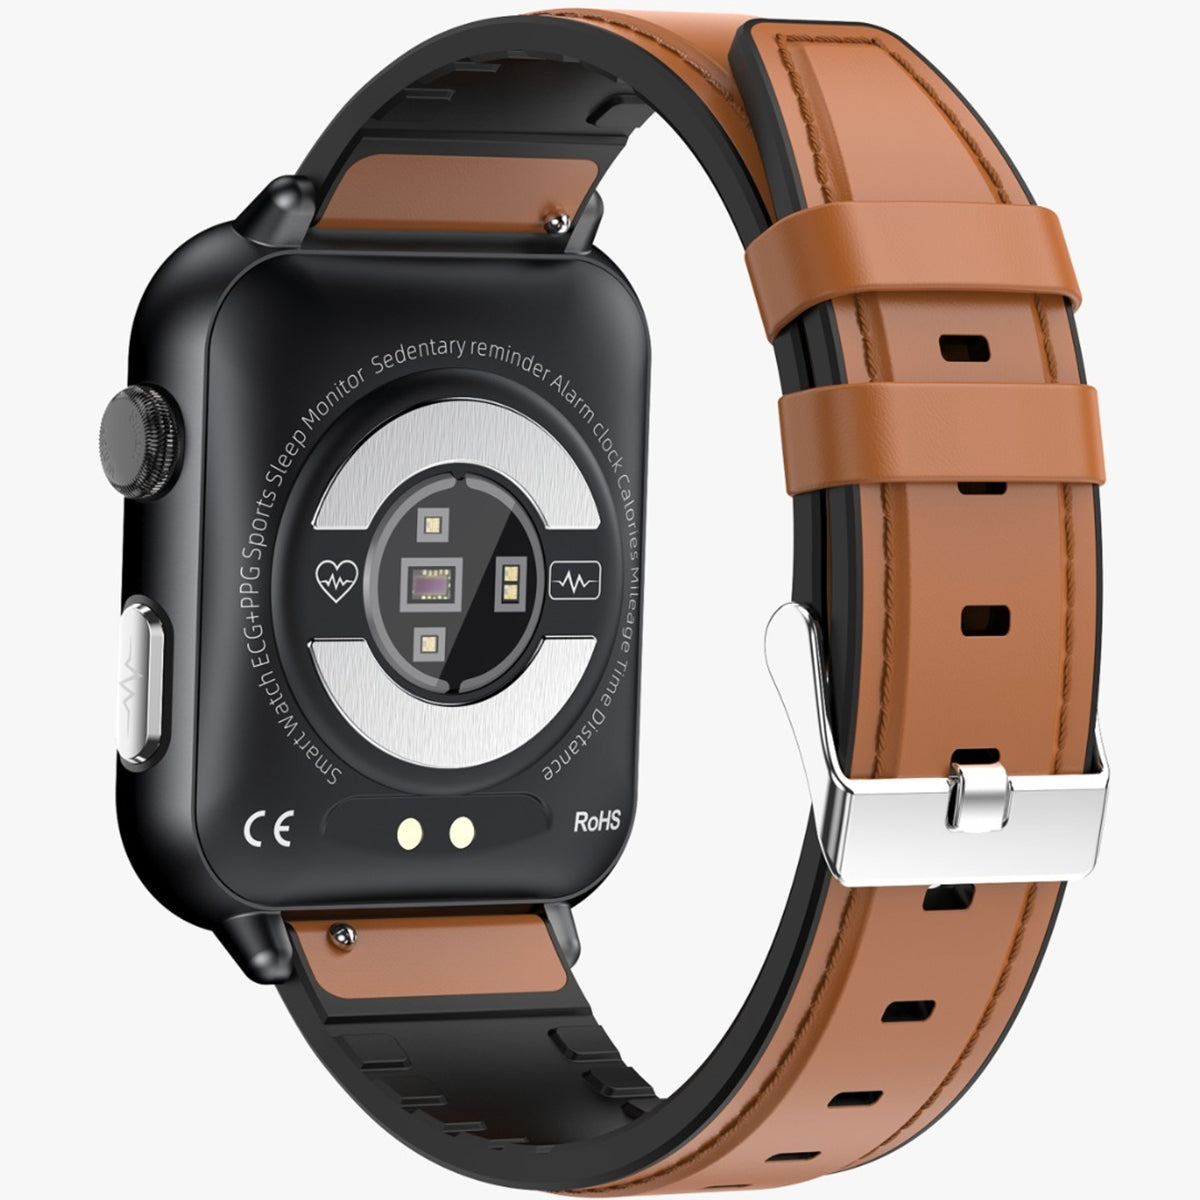 Fralugio Smart Watch Reloj Inteligente E200 De Piel Ecg Spo2